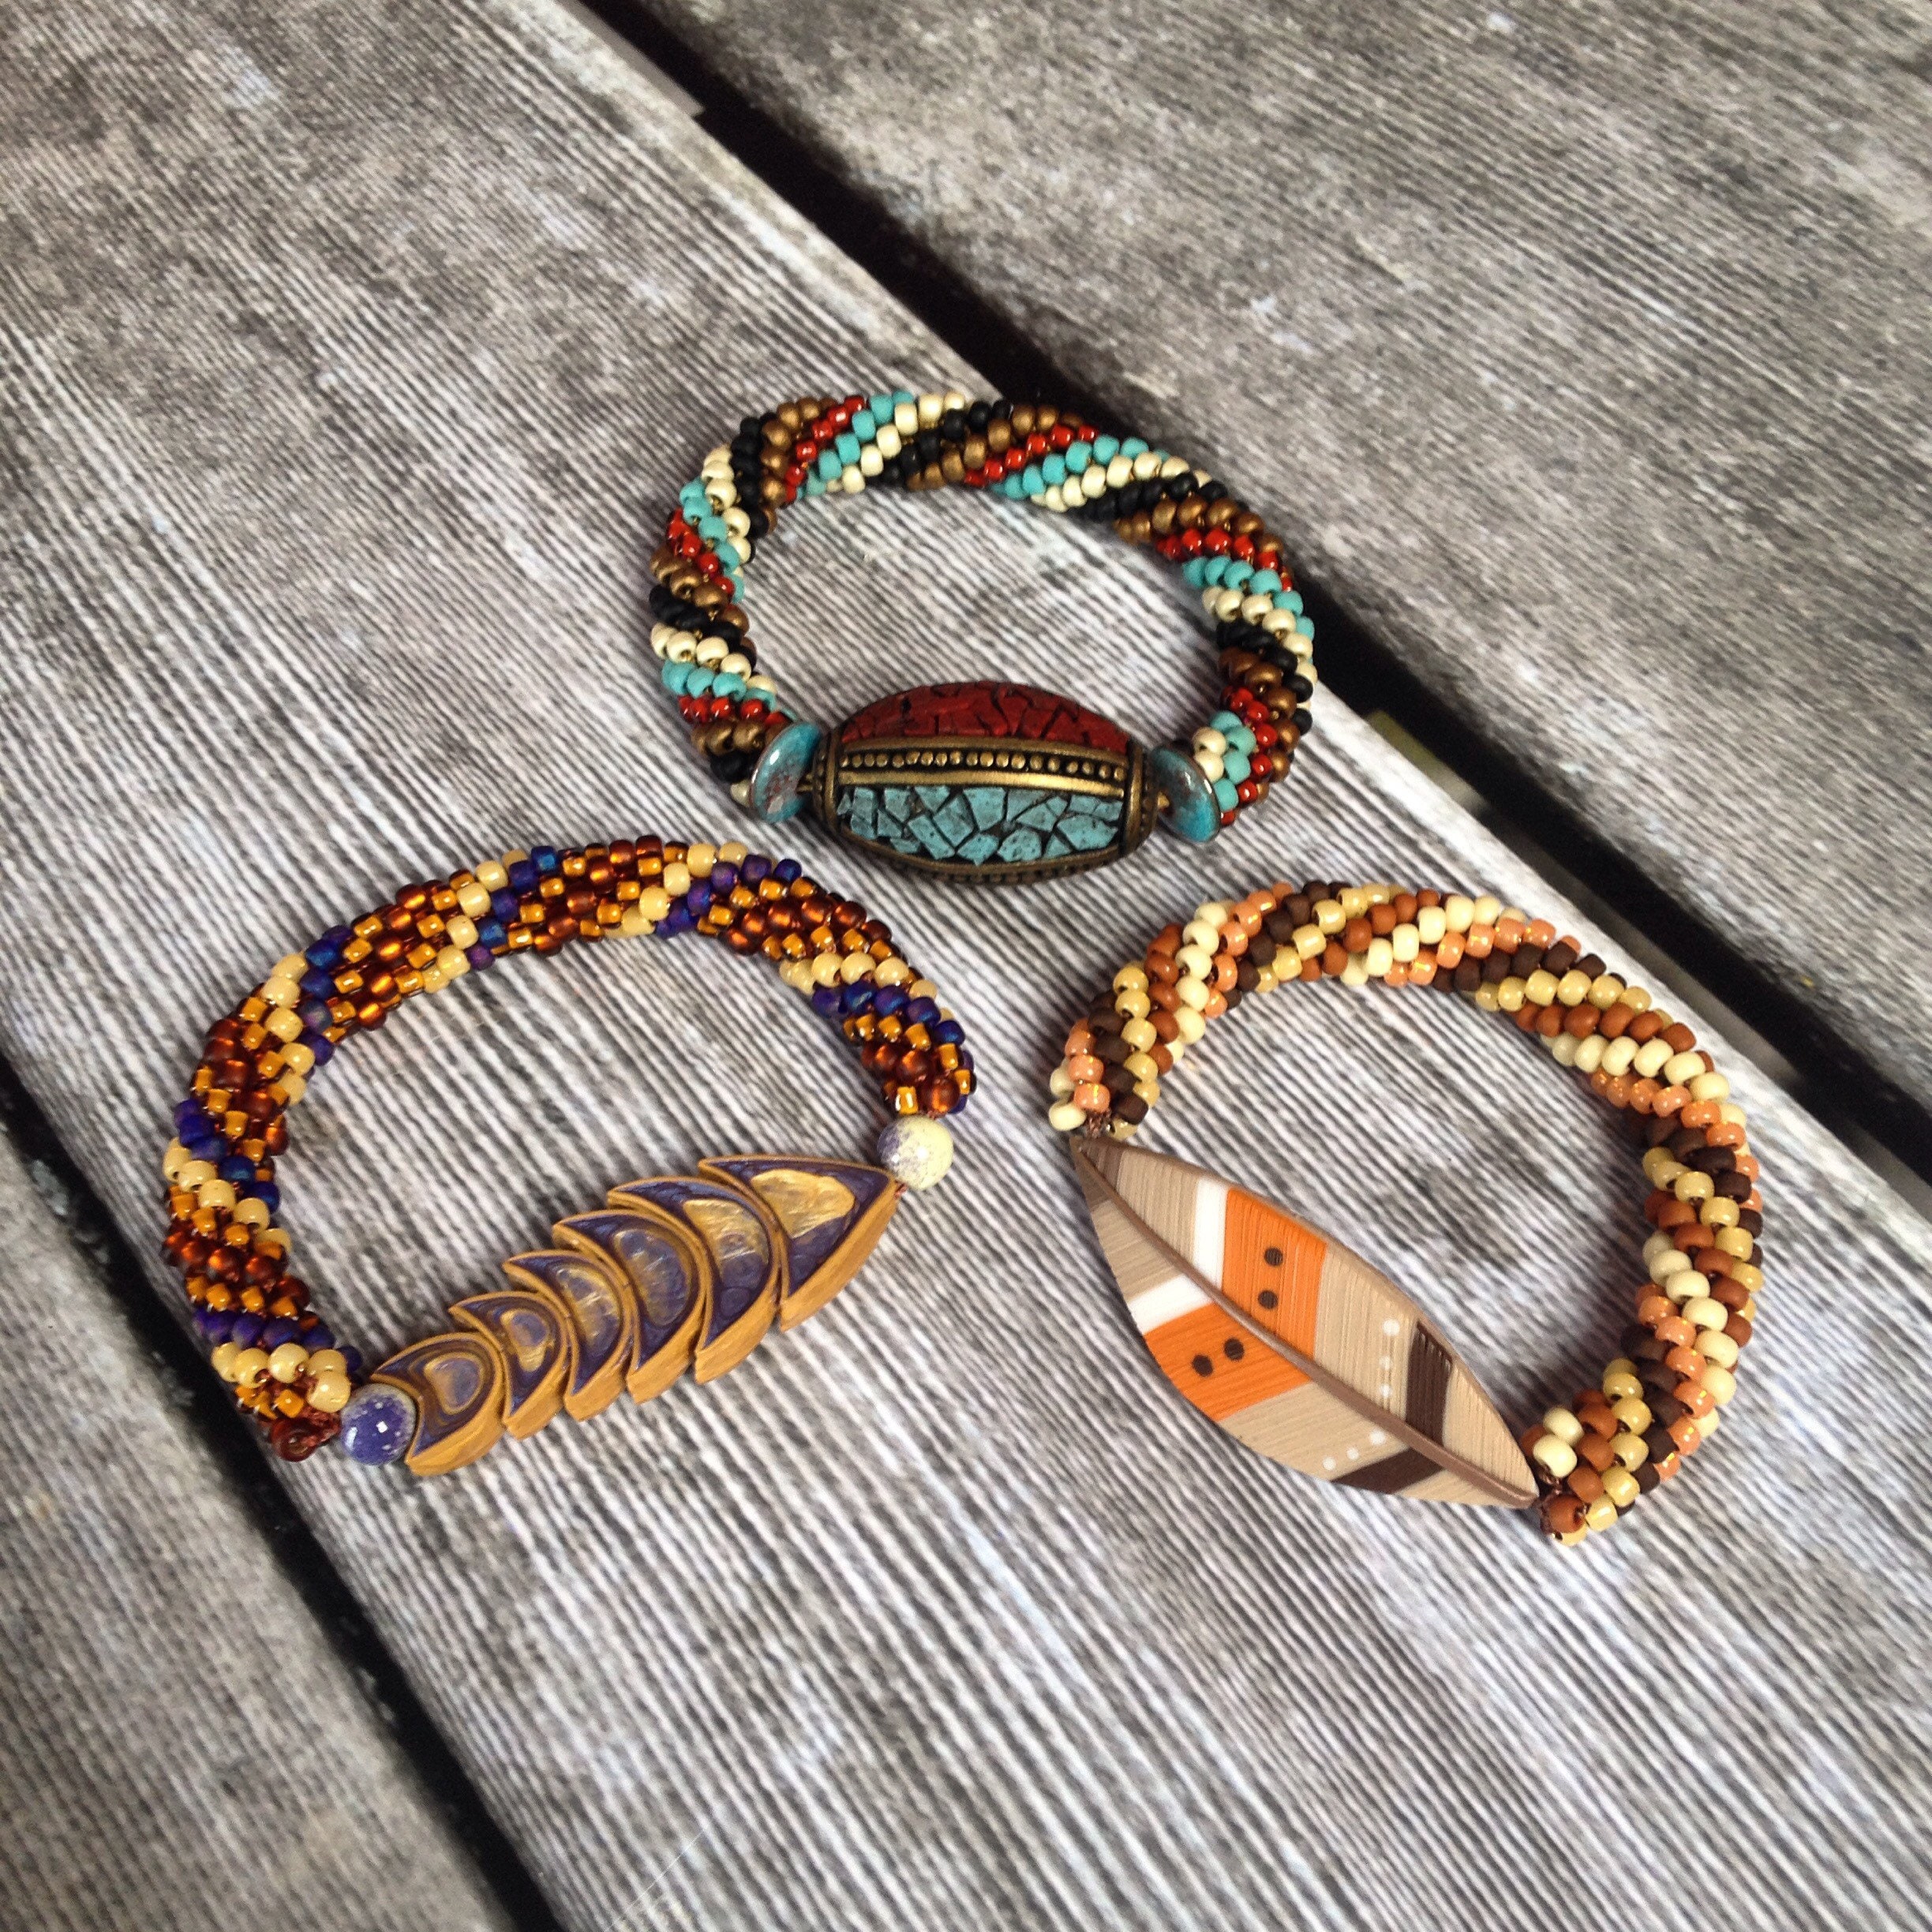 Bead Crochet Kit for the Beginner - Tribal Bead or Fish Bracelet